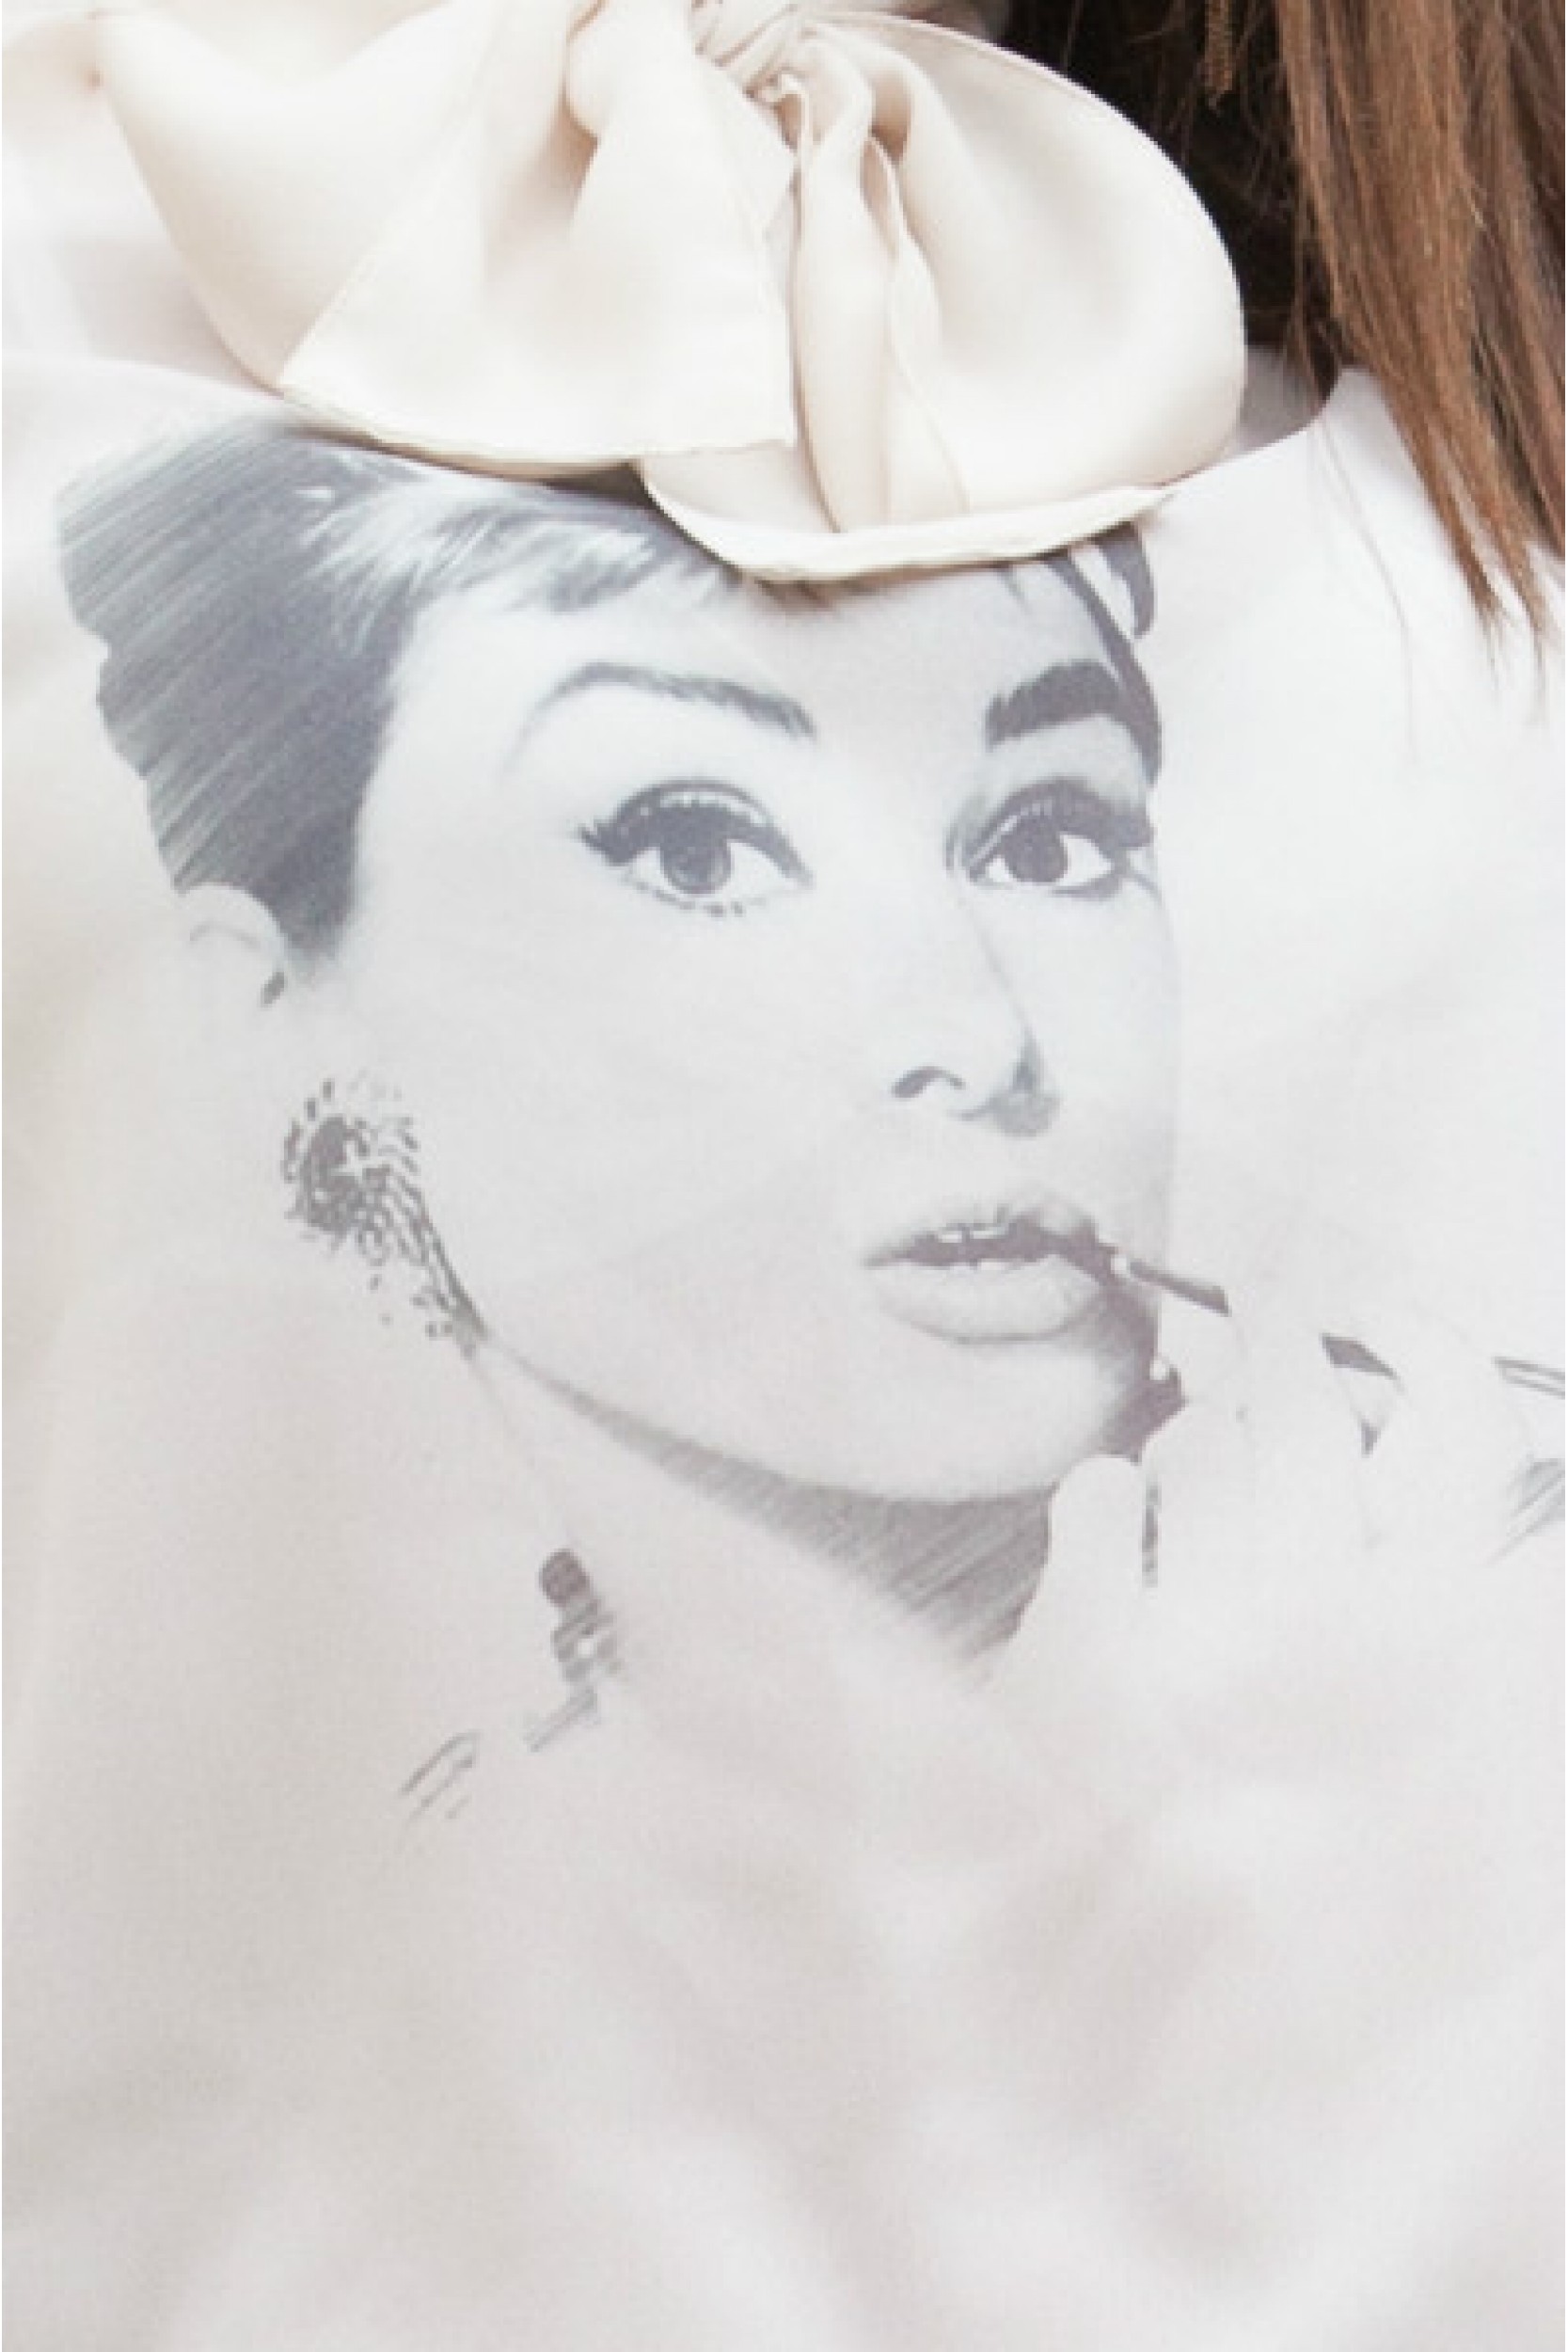 Bluza cu funda Audrey Hepburn